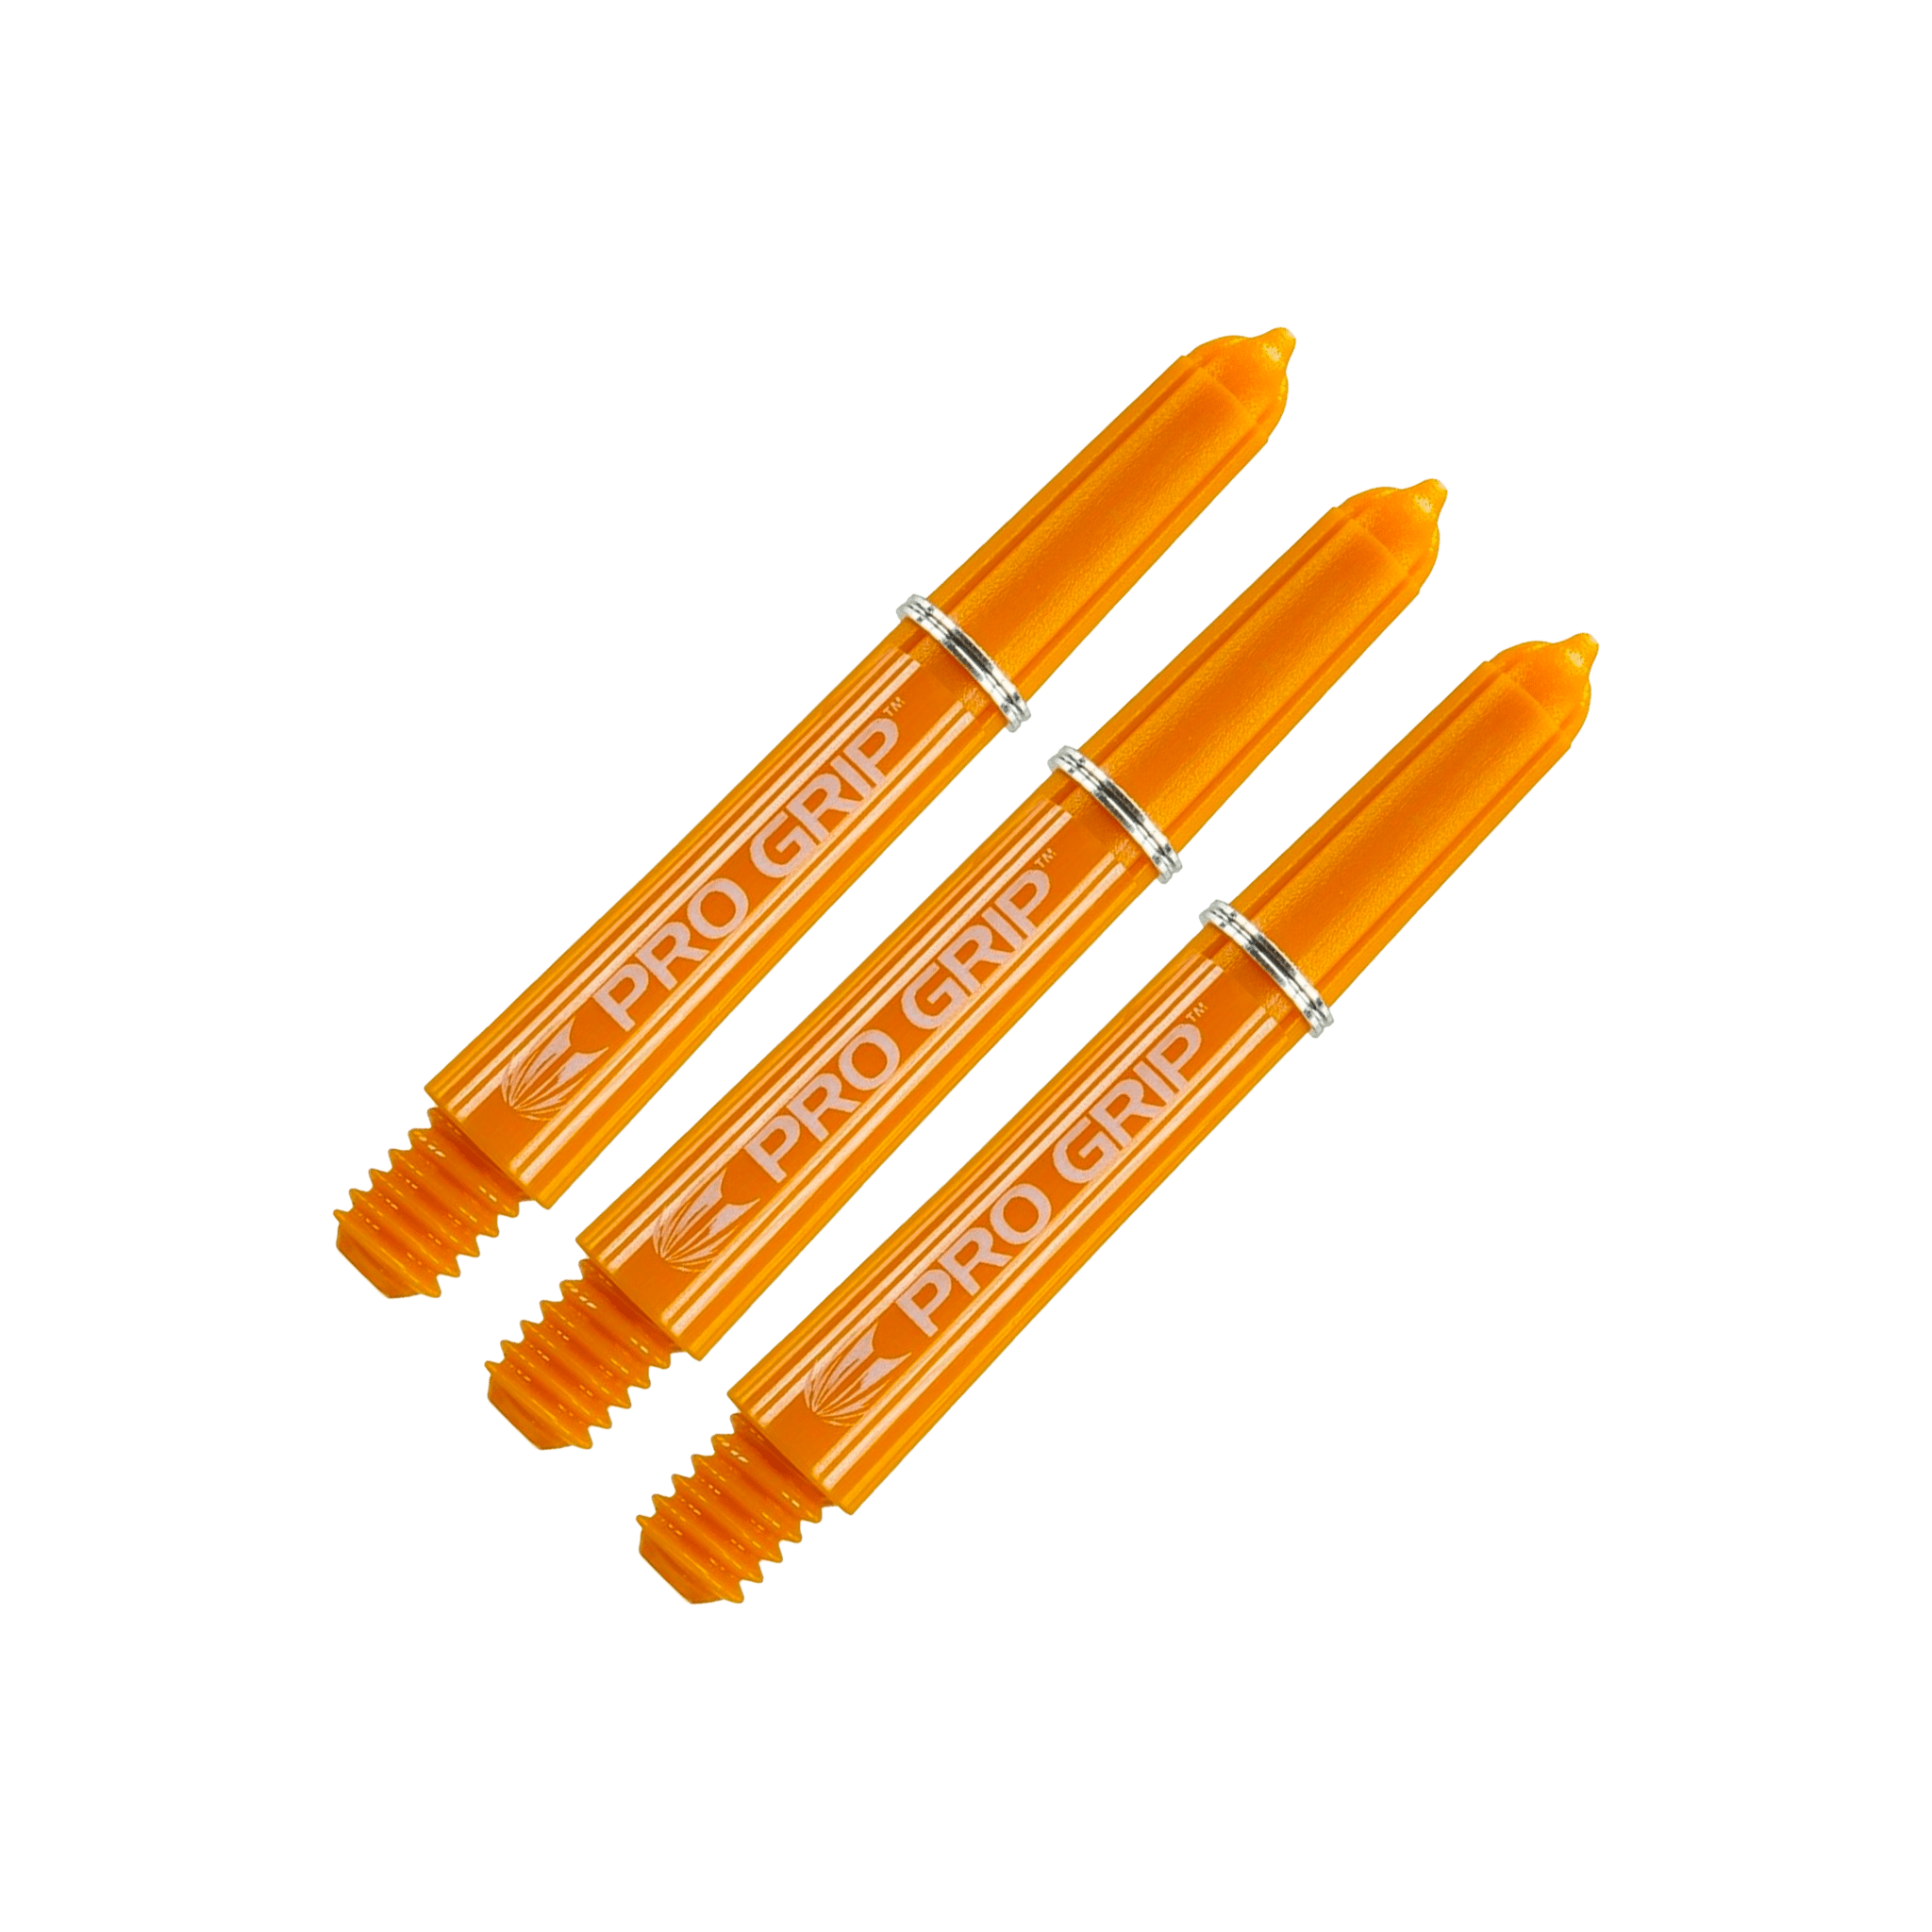 Target Pro Grip Multi Pack - Nylon Dart Shafts (3 Sets) Orange / Short (34mm) Shafts